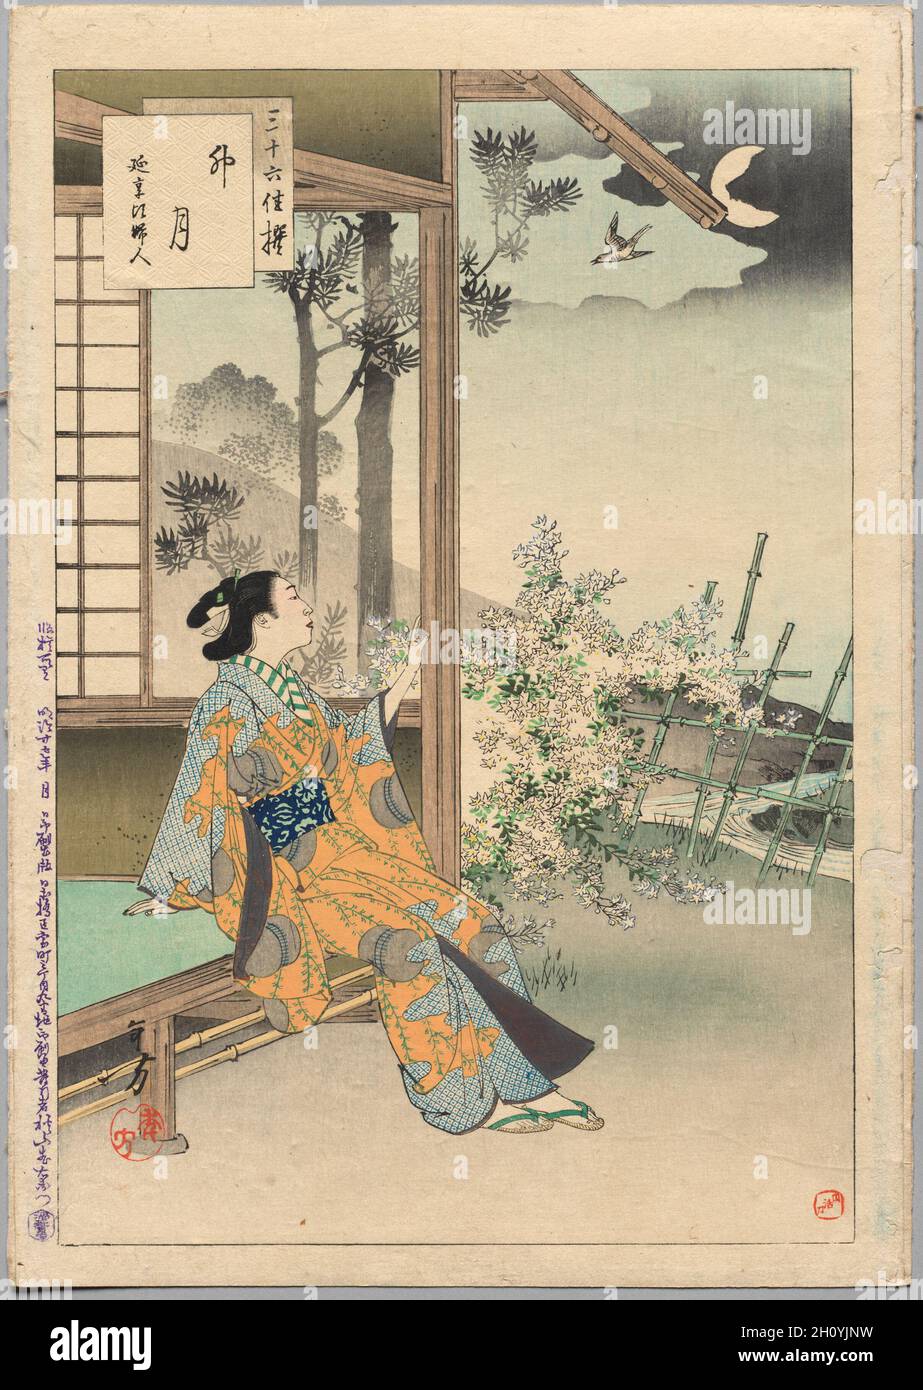 Il quarto mese, A Lady of the Enkyō era (1744-48), dalla serie trentasei eleganti selezioni, 1894. Mizuno Toshikata (Giapponese, 1866-1908). Stampa a blocchi di legno, inchiostro e colore su carta; ciascuna delle stampe della serie trentasei eleganti selezioni presenta una donna di un periodo diverso, come si addice a un artista che era interessato alla pittura di storia. La maggior parte delle stampe è impostata nel periodo Edo (1615–1868). Mizuno Toshikata fu uno studente favorito di Tsukioka Yoshitoshi (1839–1892), e prese il suo posto come illustratore di giornali. Foto Stock